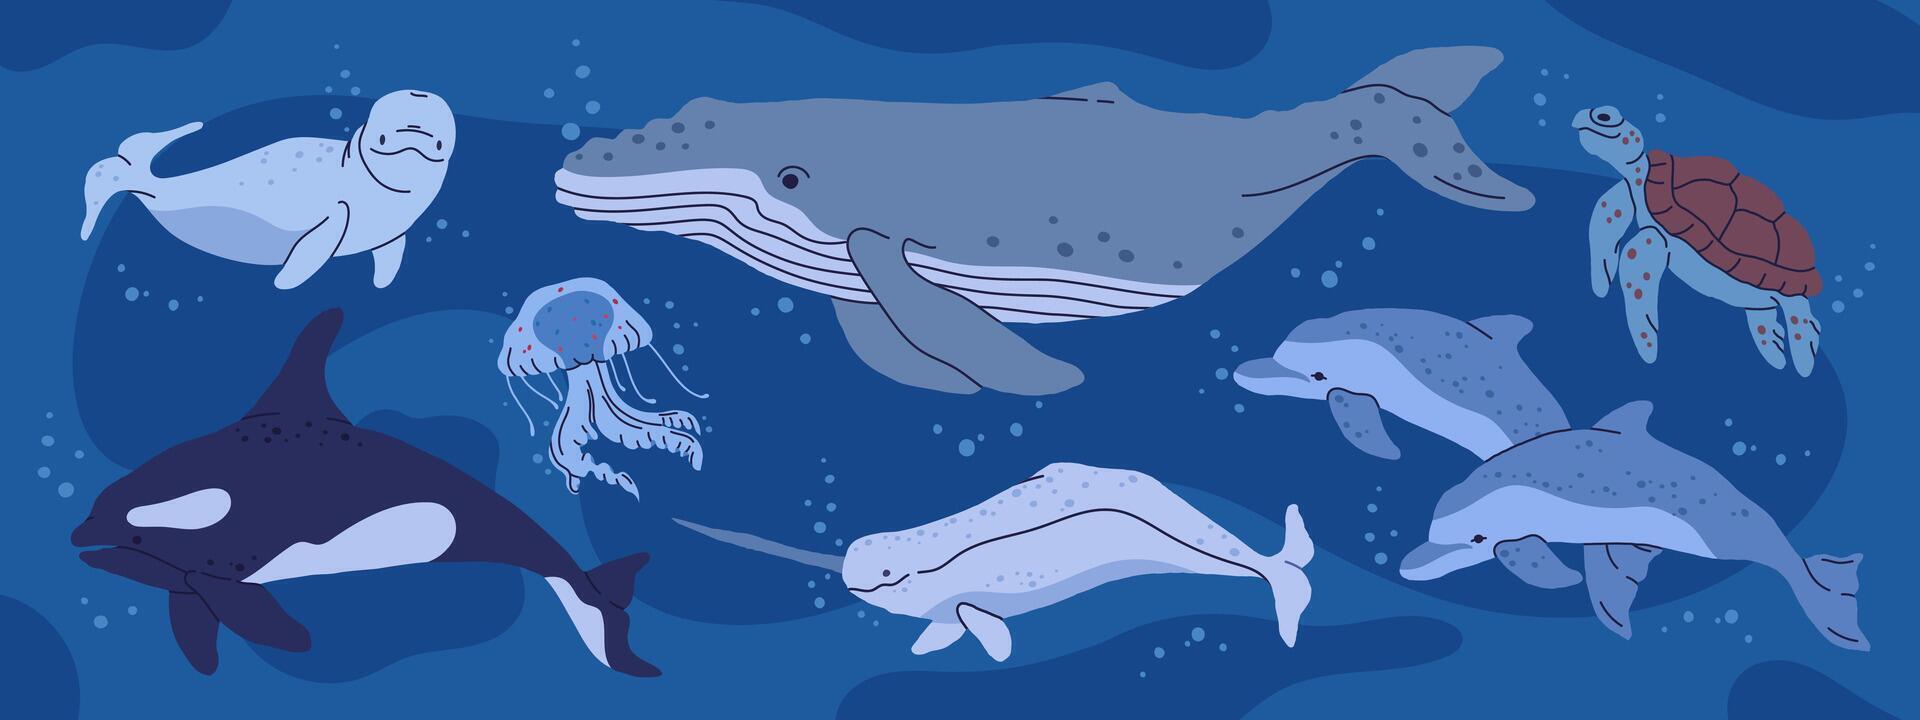 wild oceaan dieren. onderwater- fauna, walvis, orka, schildpad en kwallen, hand- getrokken onderwater- aquatisch dieren vlak illustratie set. antarctisch natuur aquatisch dieren verzameling vector